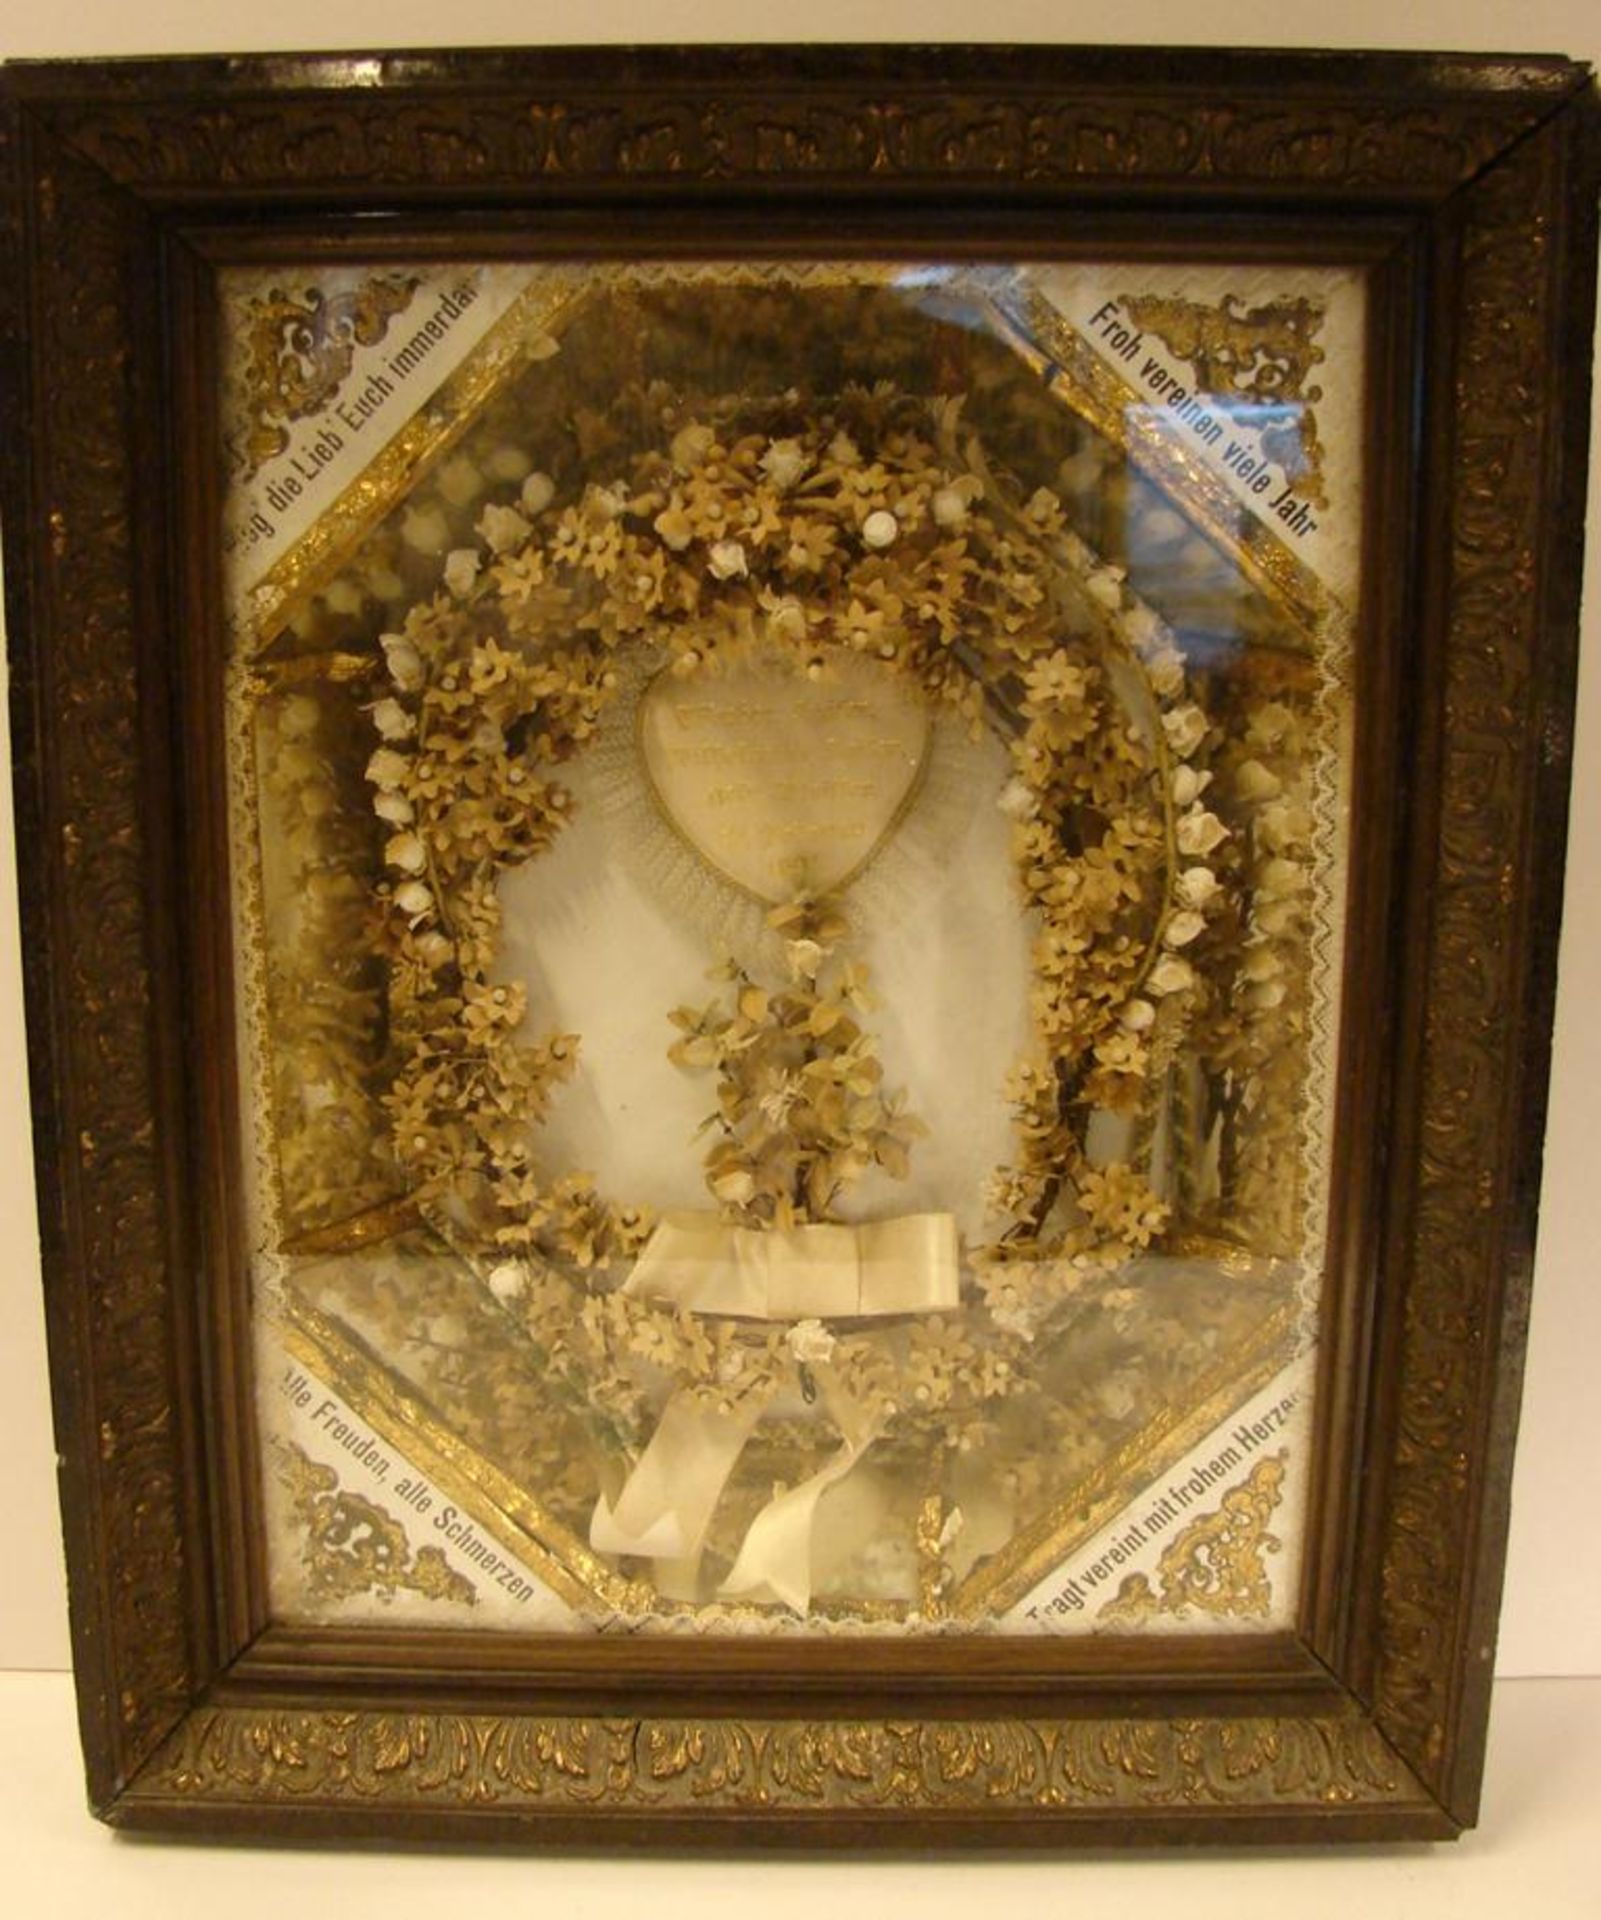 Klosterarbeit, Kranz mit weissen Blüten, Spruchbänder, ca. 46 x 39 cm- - -22.00 % buyer's premium on